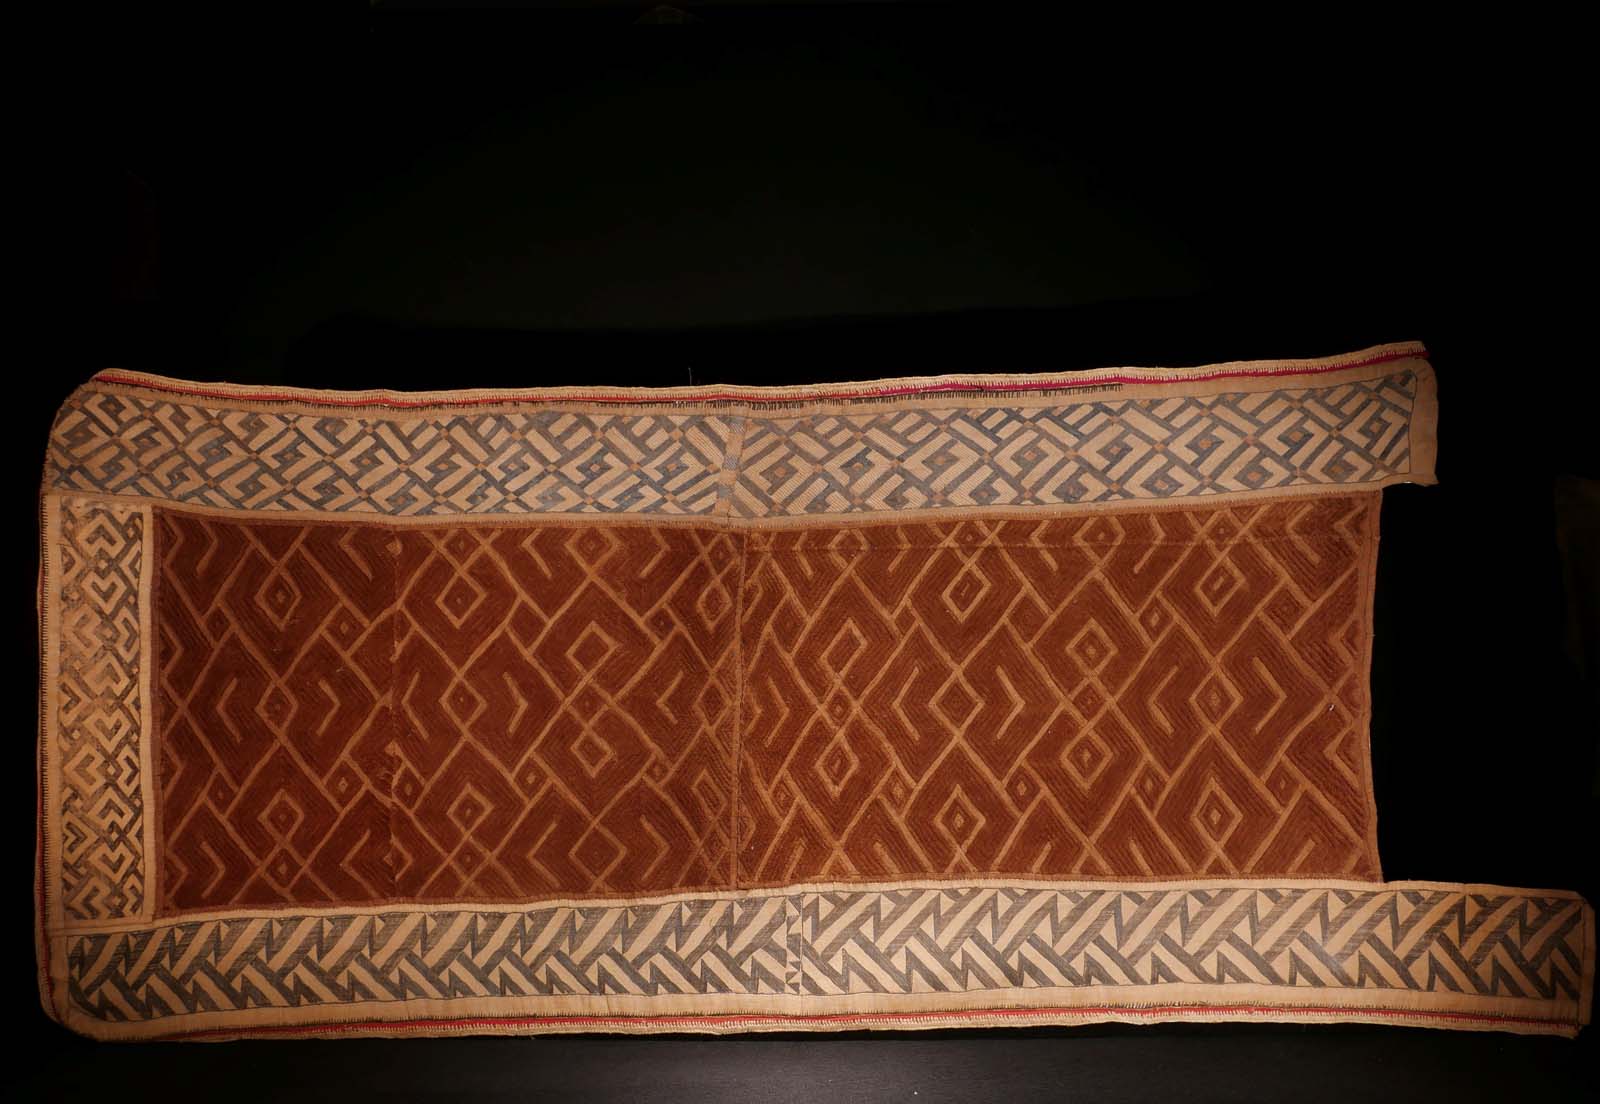 Frauen-Wickelrock, Raphia, Samtstickerei, Bordüren Flachstickerei, gefärbt mit Rotholz-Pulver. Bushong / Kongo. L 150 cm, B 68 cm. 900.- €